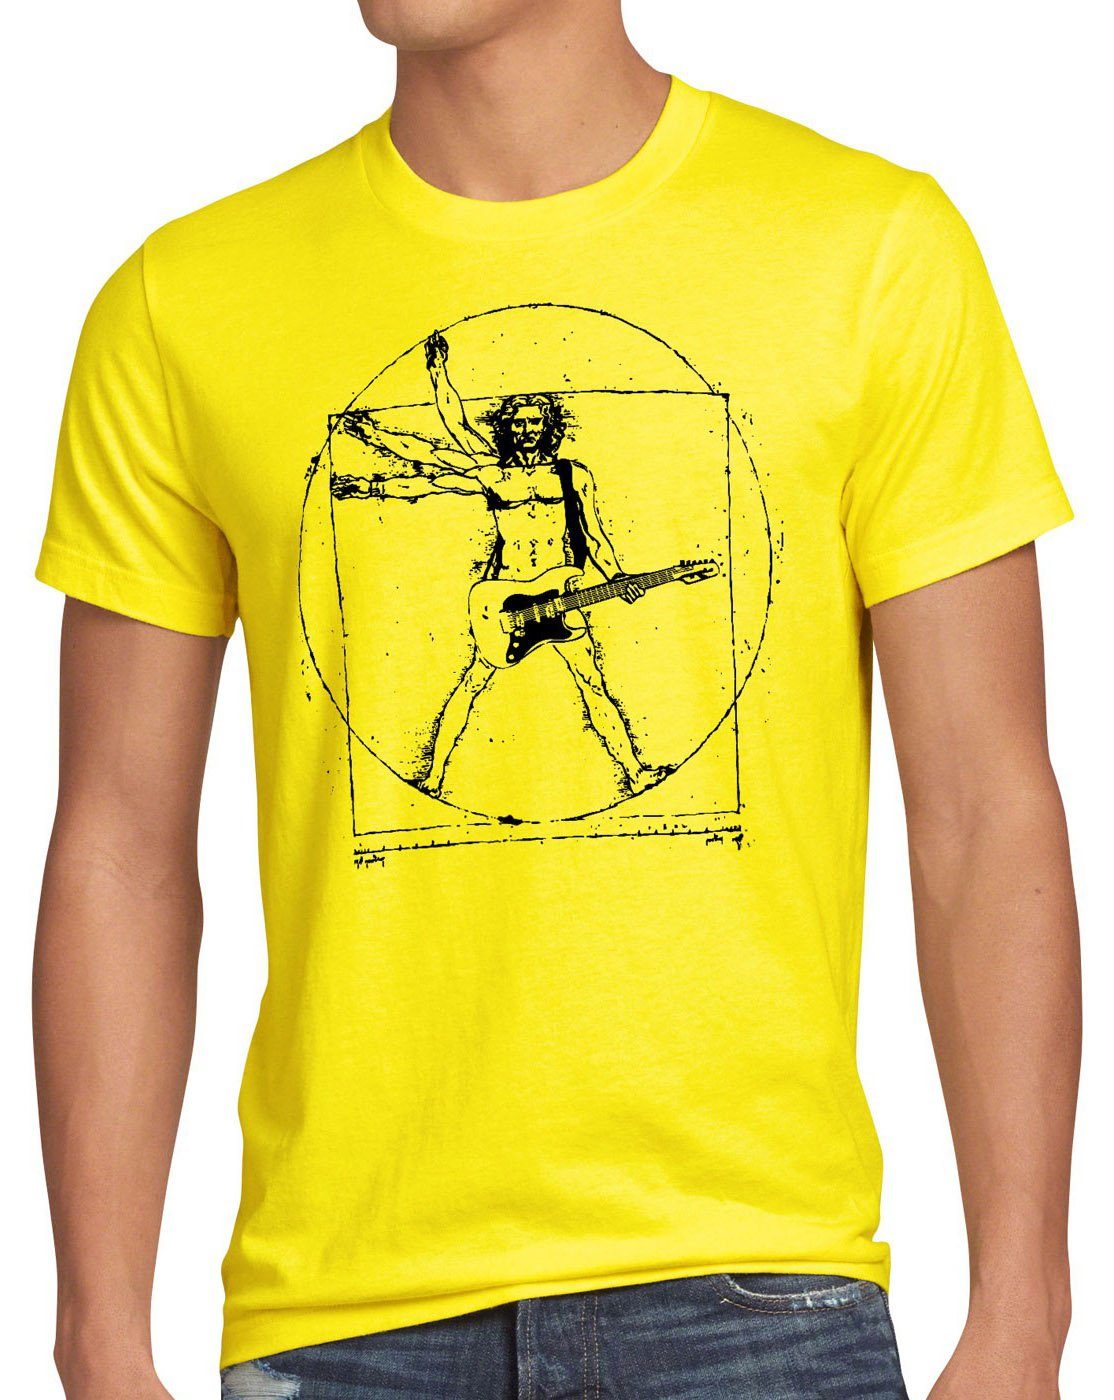 style3 Print-Shirt Herren T-Shirt Da Vinci Rock T-Shirt musik festival gitarre vinyl metal open air wacken mensch gelb